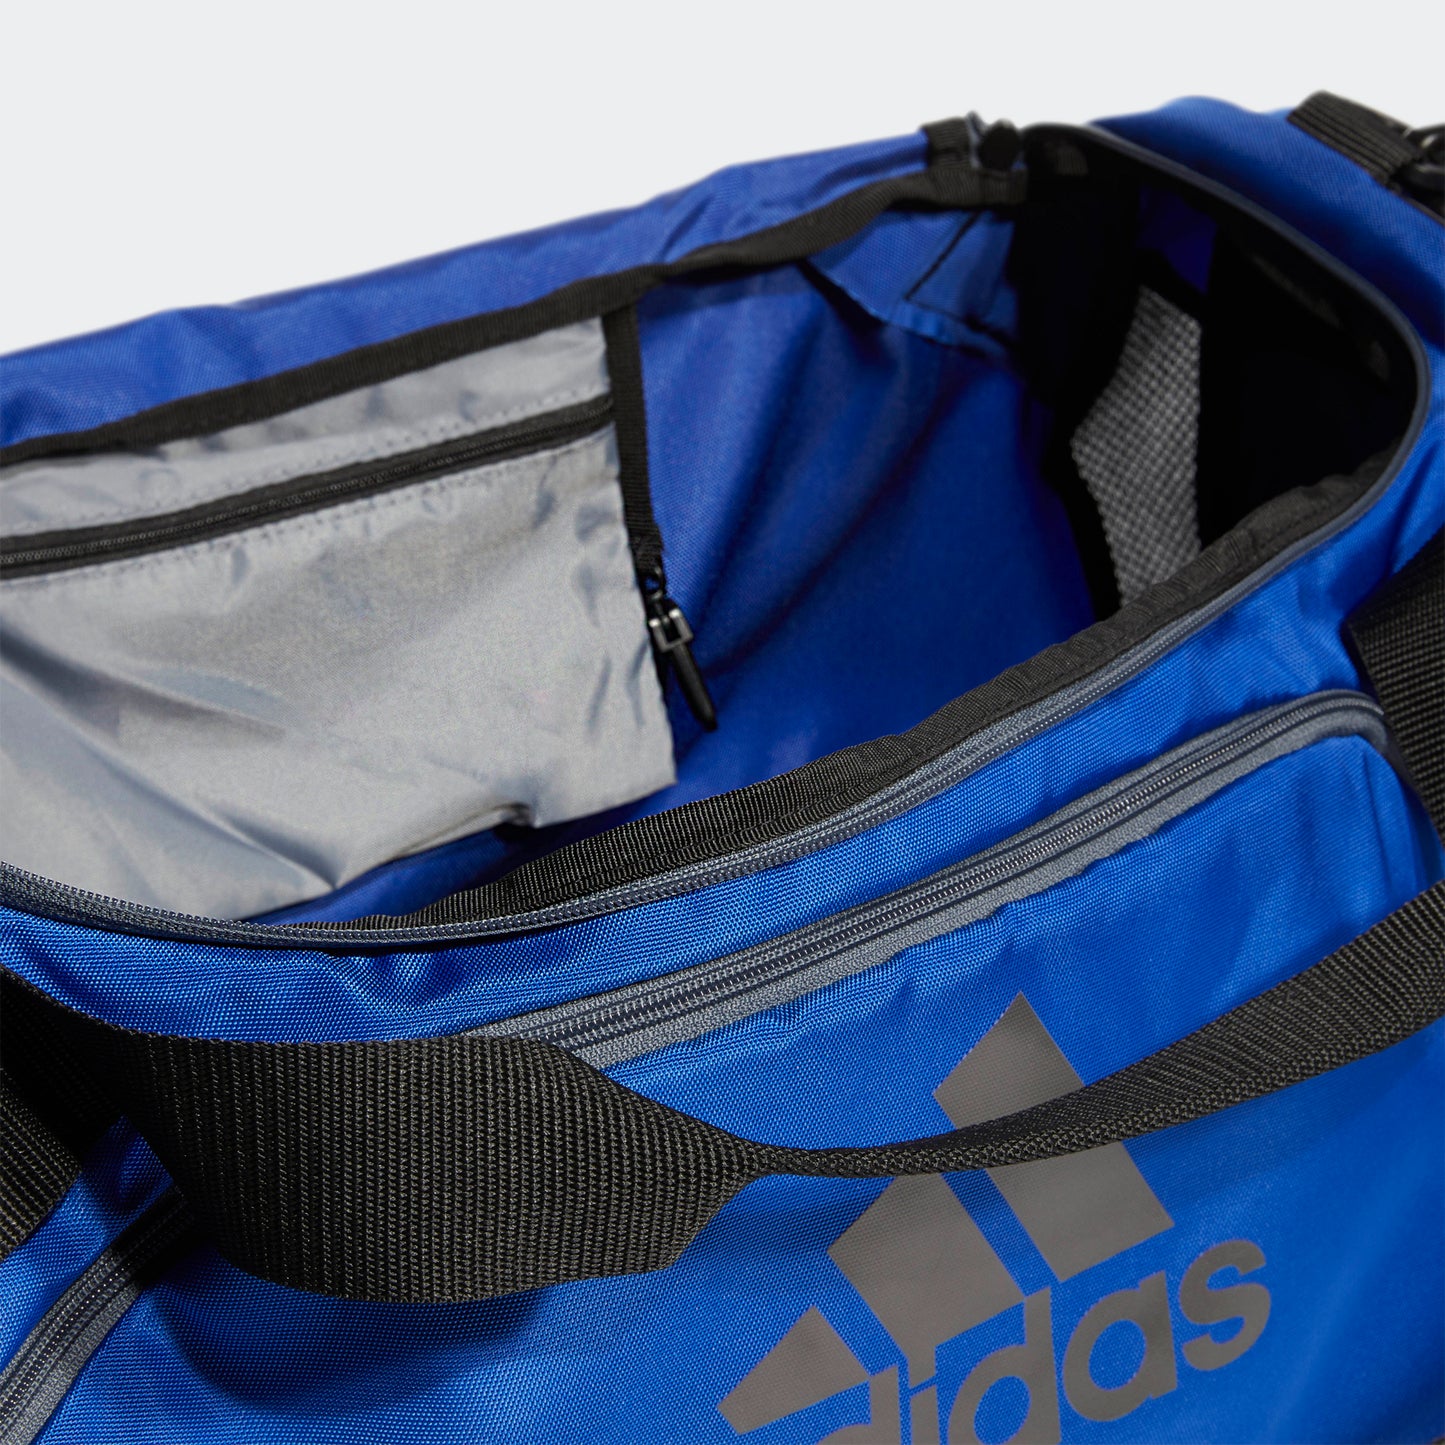 adidas TEAM ISSUE II Medium Duffel Bag | Royal Blue